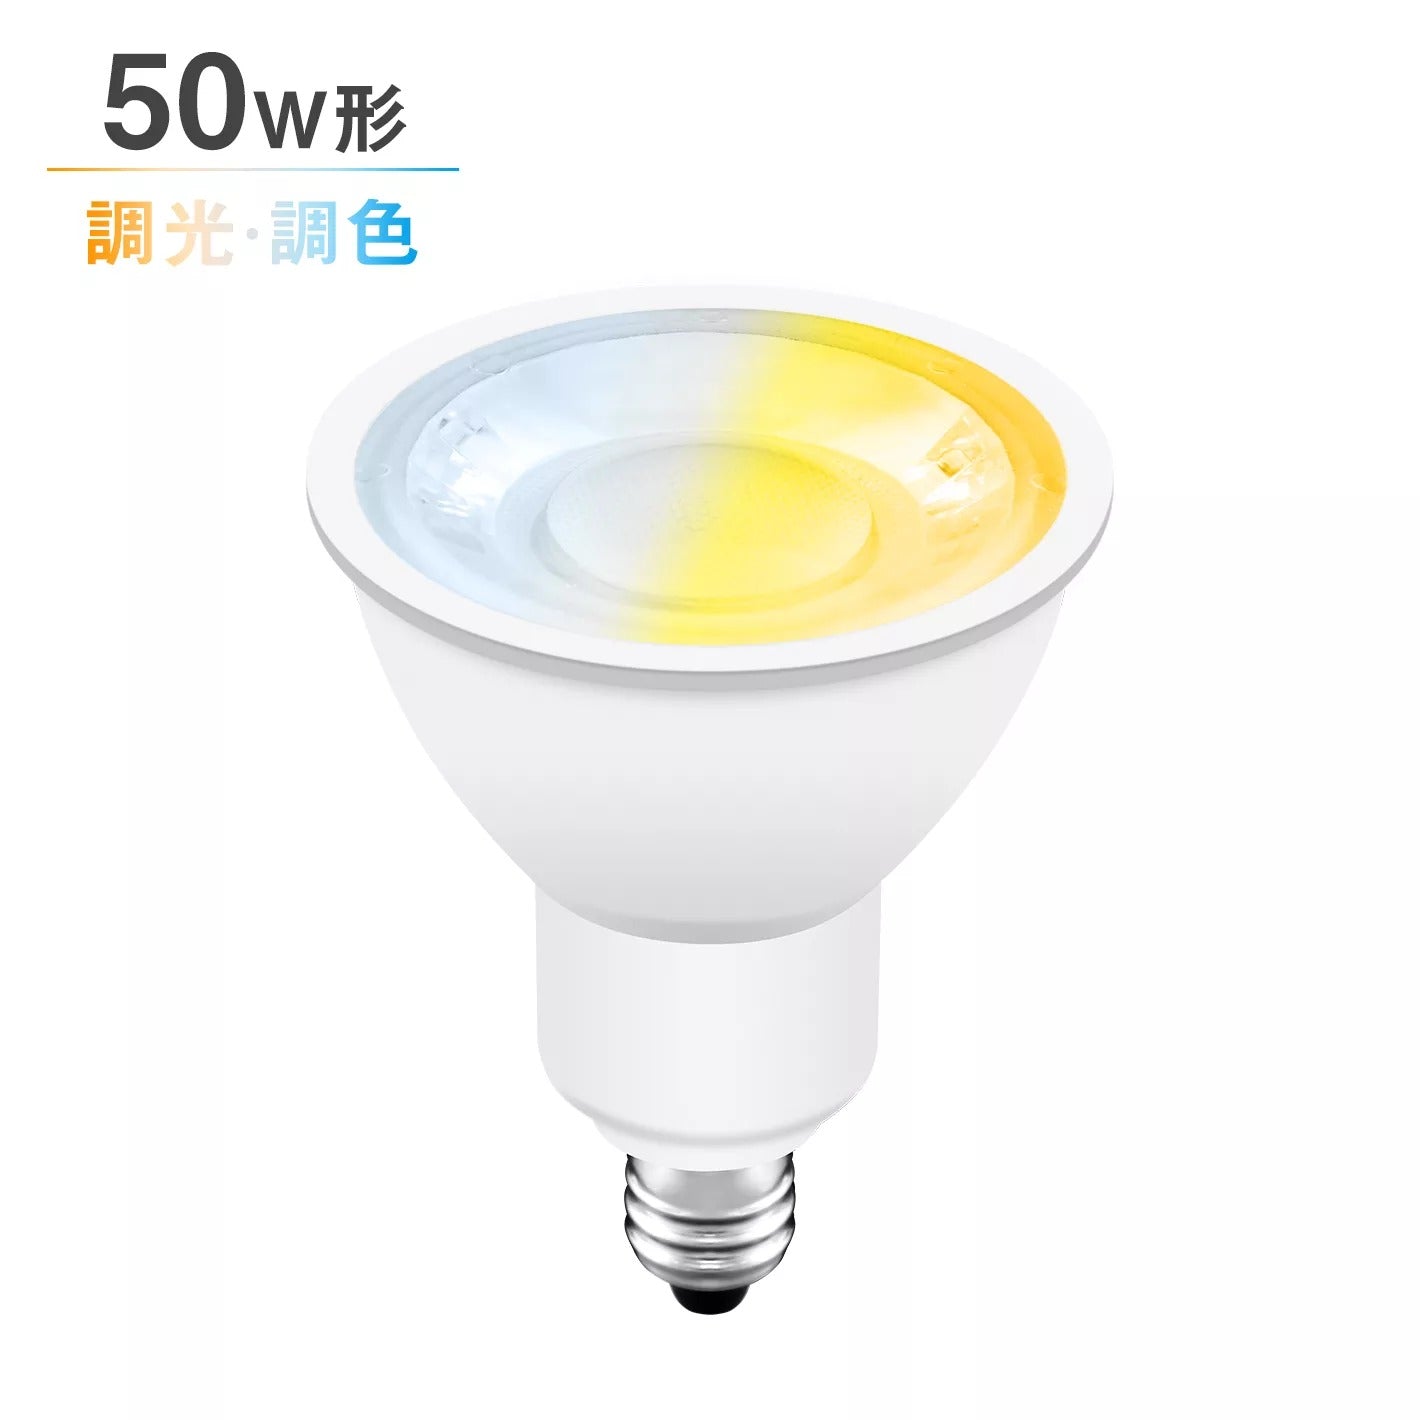 共同照明】LEDスポットライト E11 調光調色 50W形 ハロゲン電球 リモコン対応 電球色 昼白色 昼光色